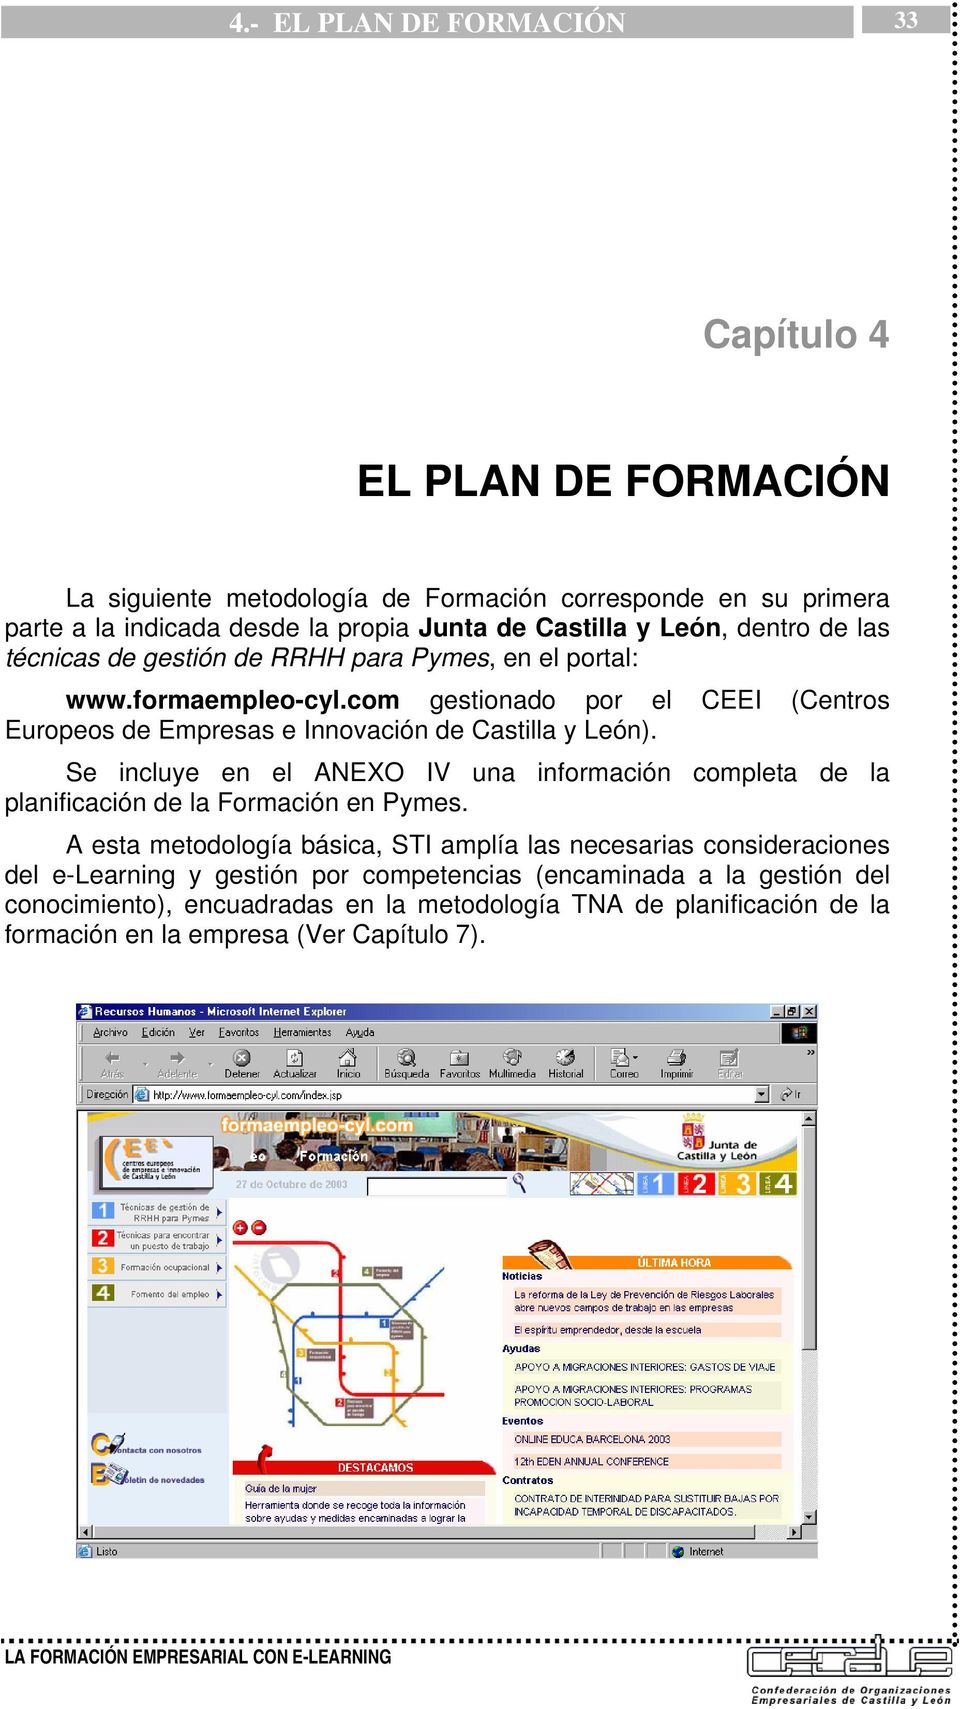 com gestionado por el CEEI (Centros Europeos de Empresas e Innovación de Castilla y León).